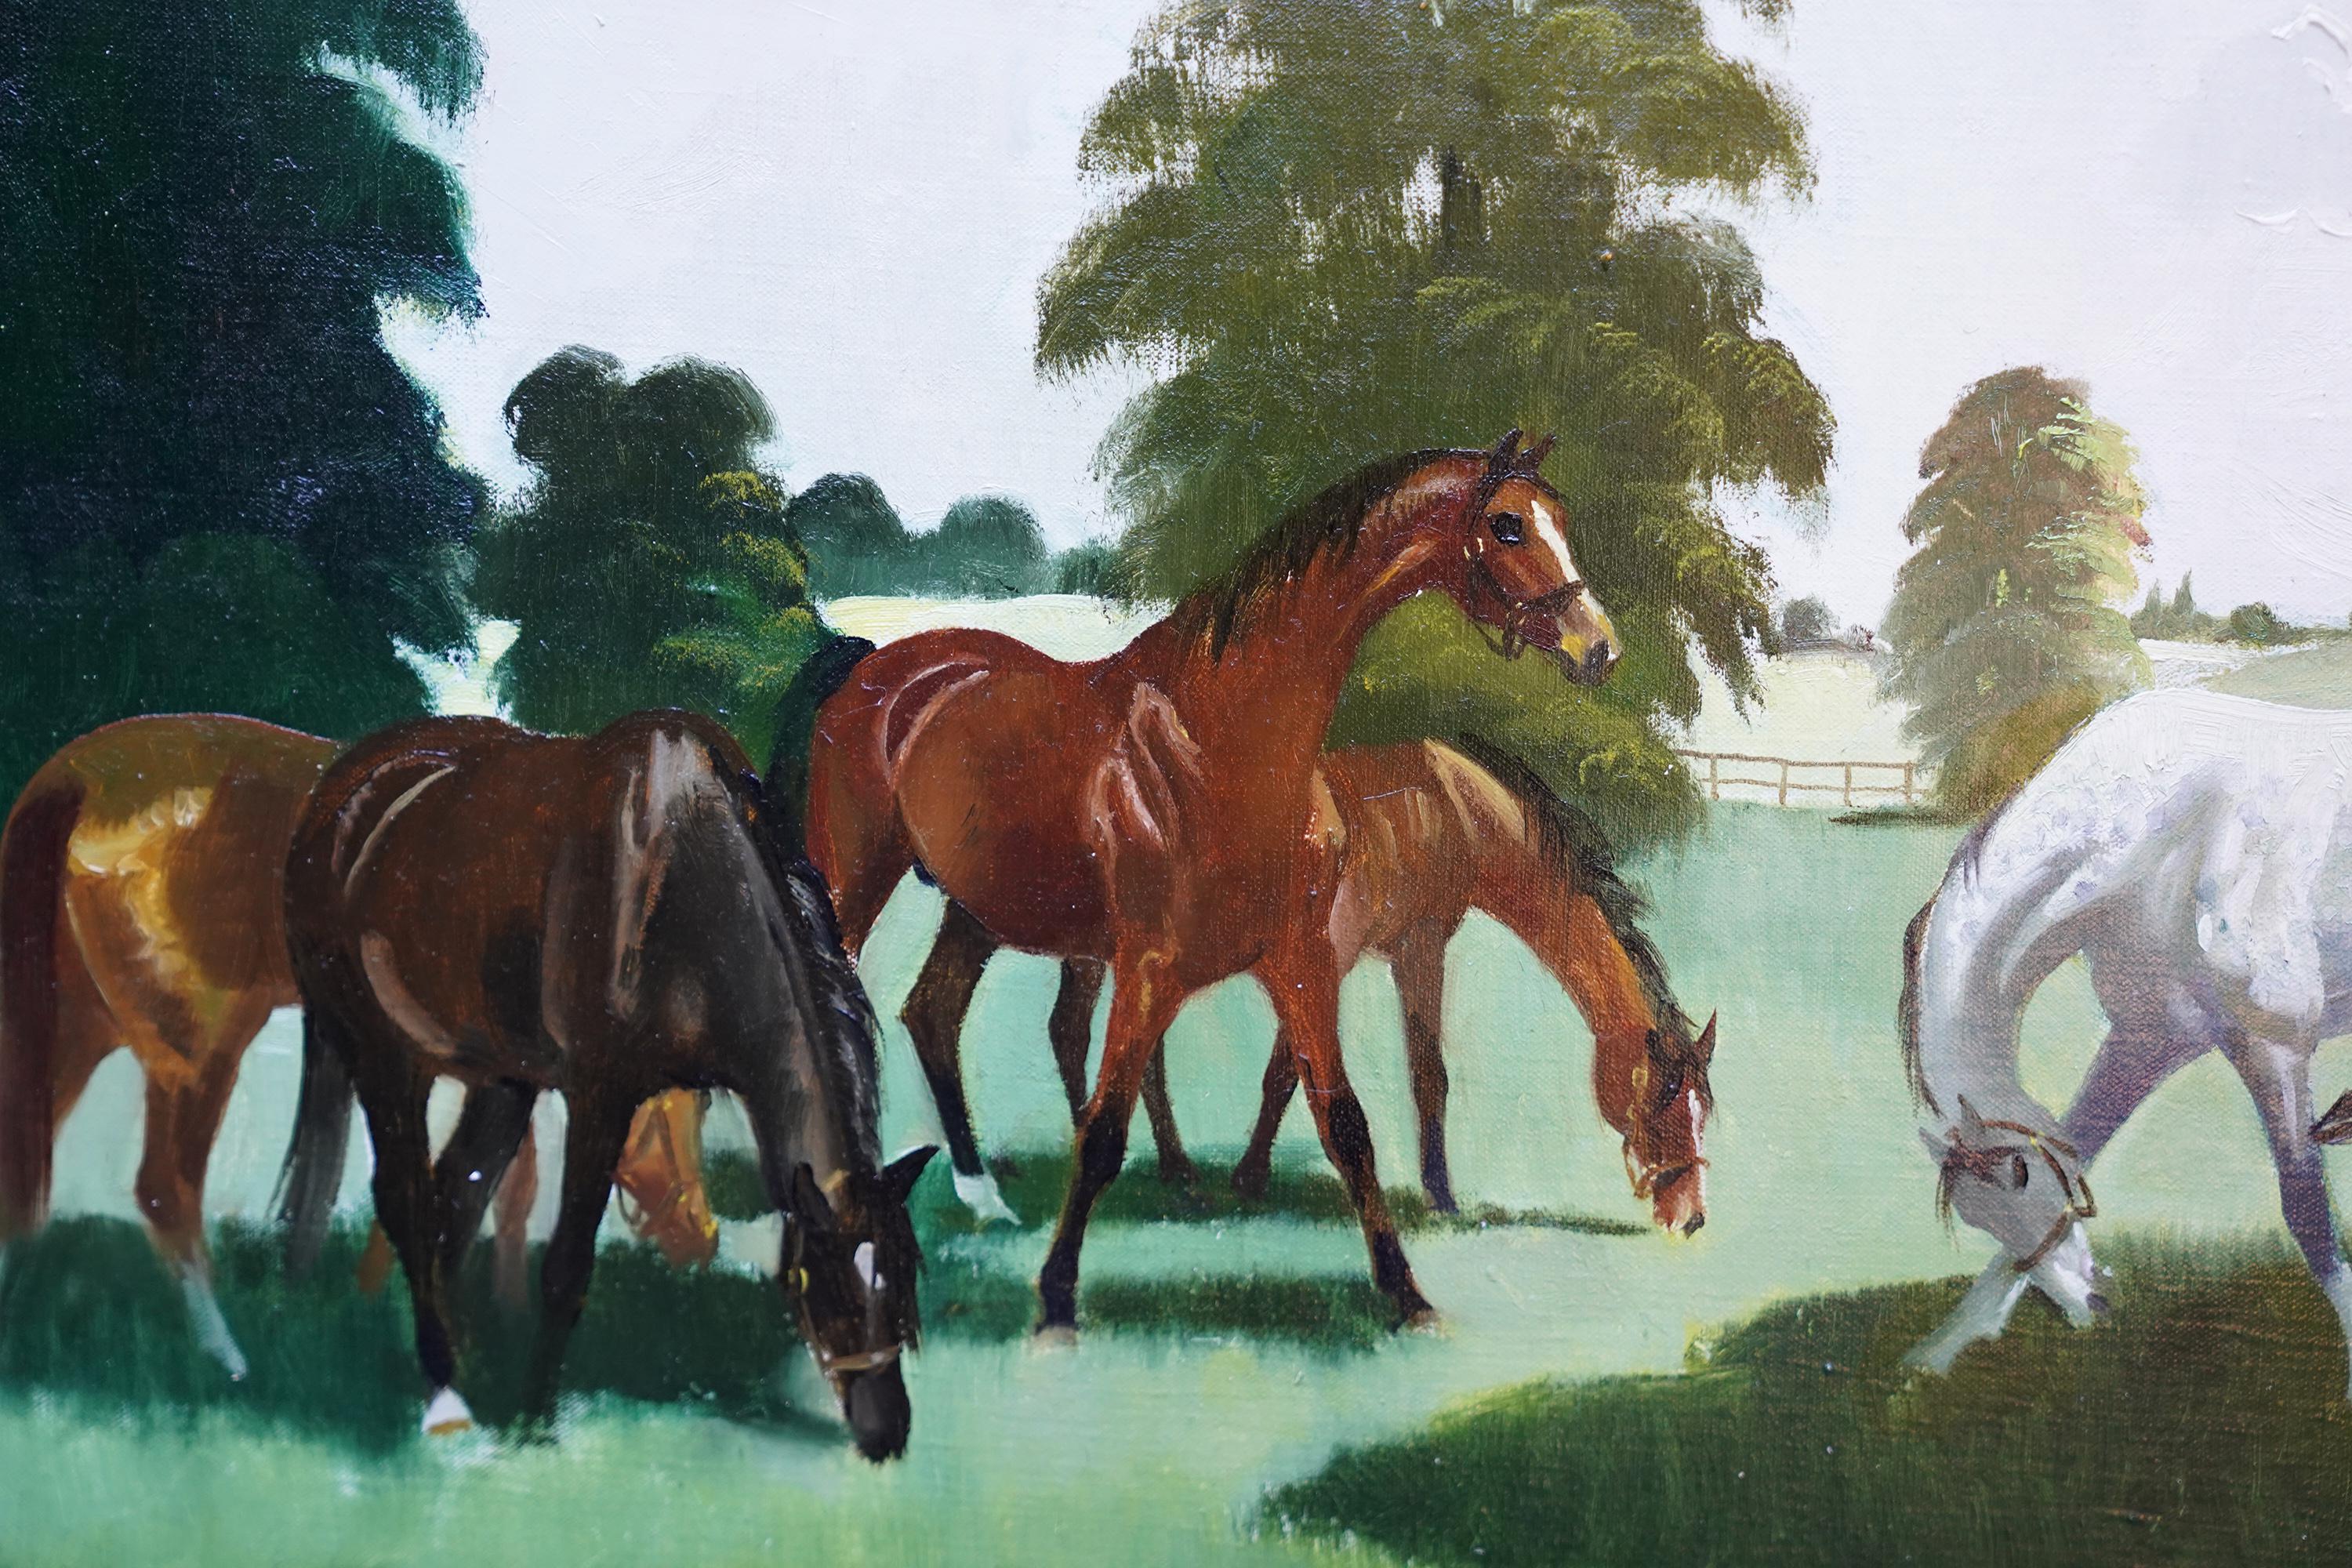 Dieses herrliche Ölgemälde mit Pferden stammt von der schottischen Künstlerin Doris Zinkeisen. Um 1960 gemalt, zeigt die Komposition sechs Pferde in einer Landschaft. Die Pinselführung ist großartig, und es ist ein schönes, lebendiges Gemälde für